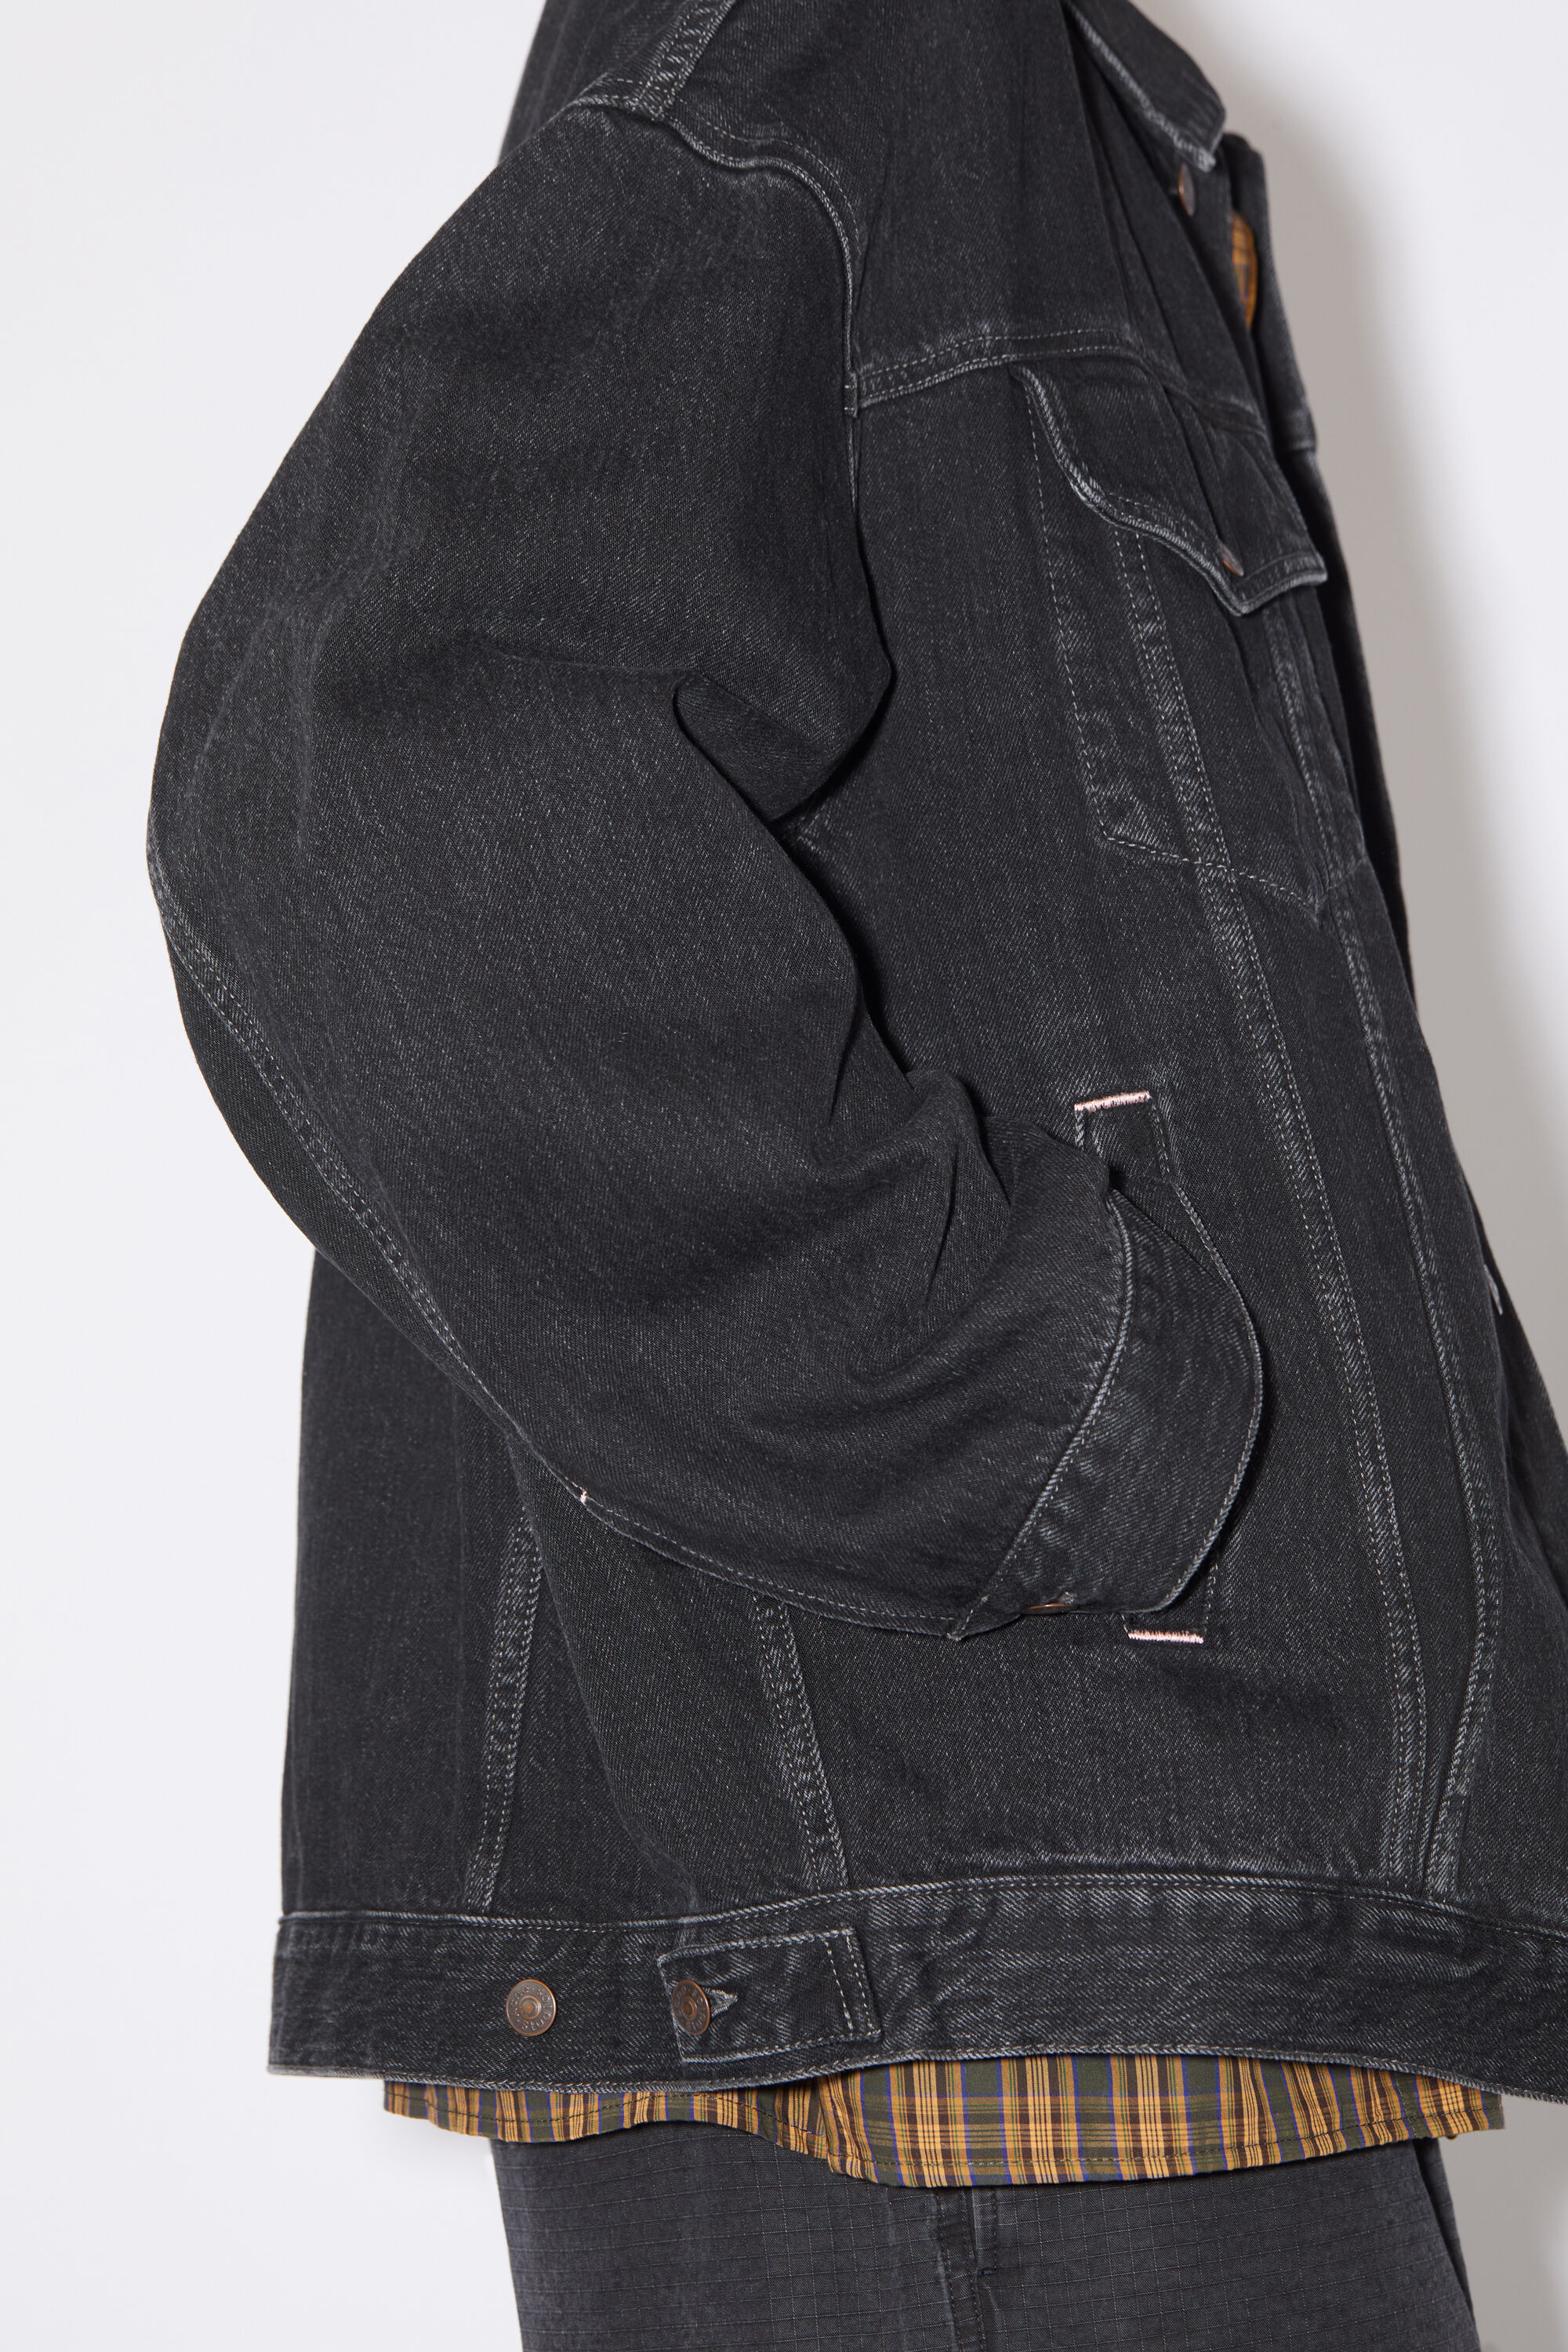 H&M Black Denim Jacket Men's Size Extra India | Ubuy